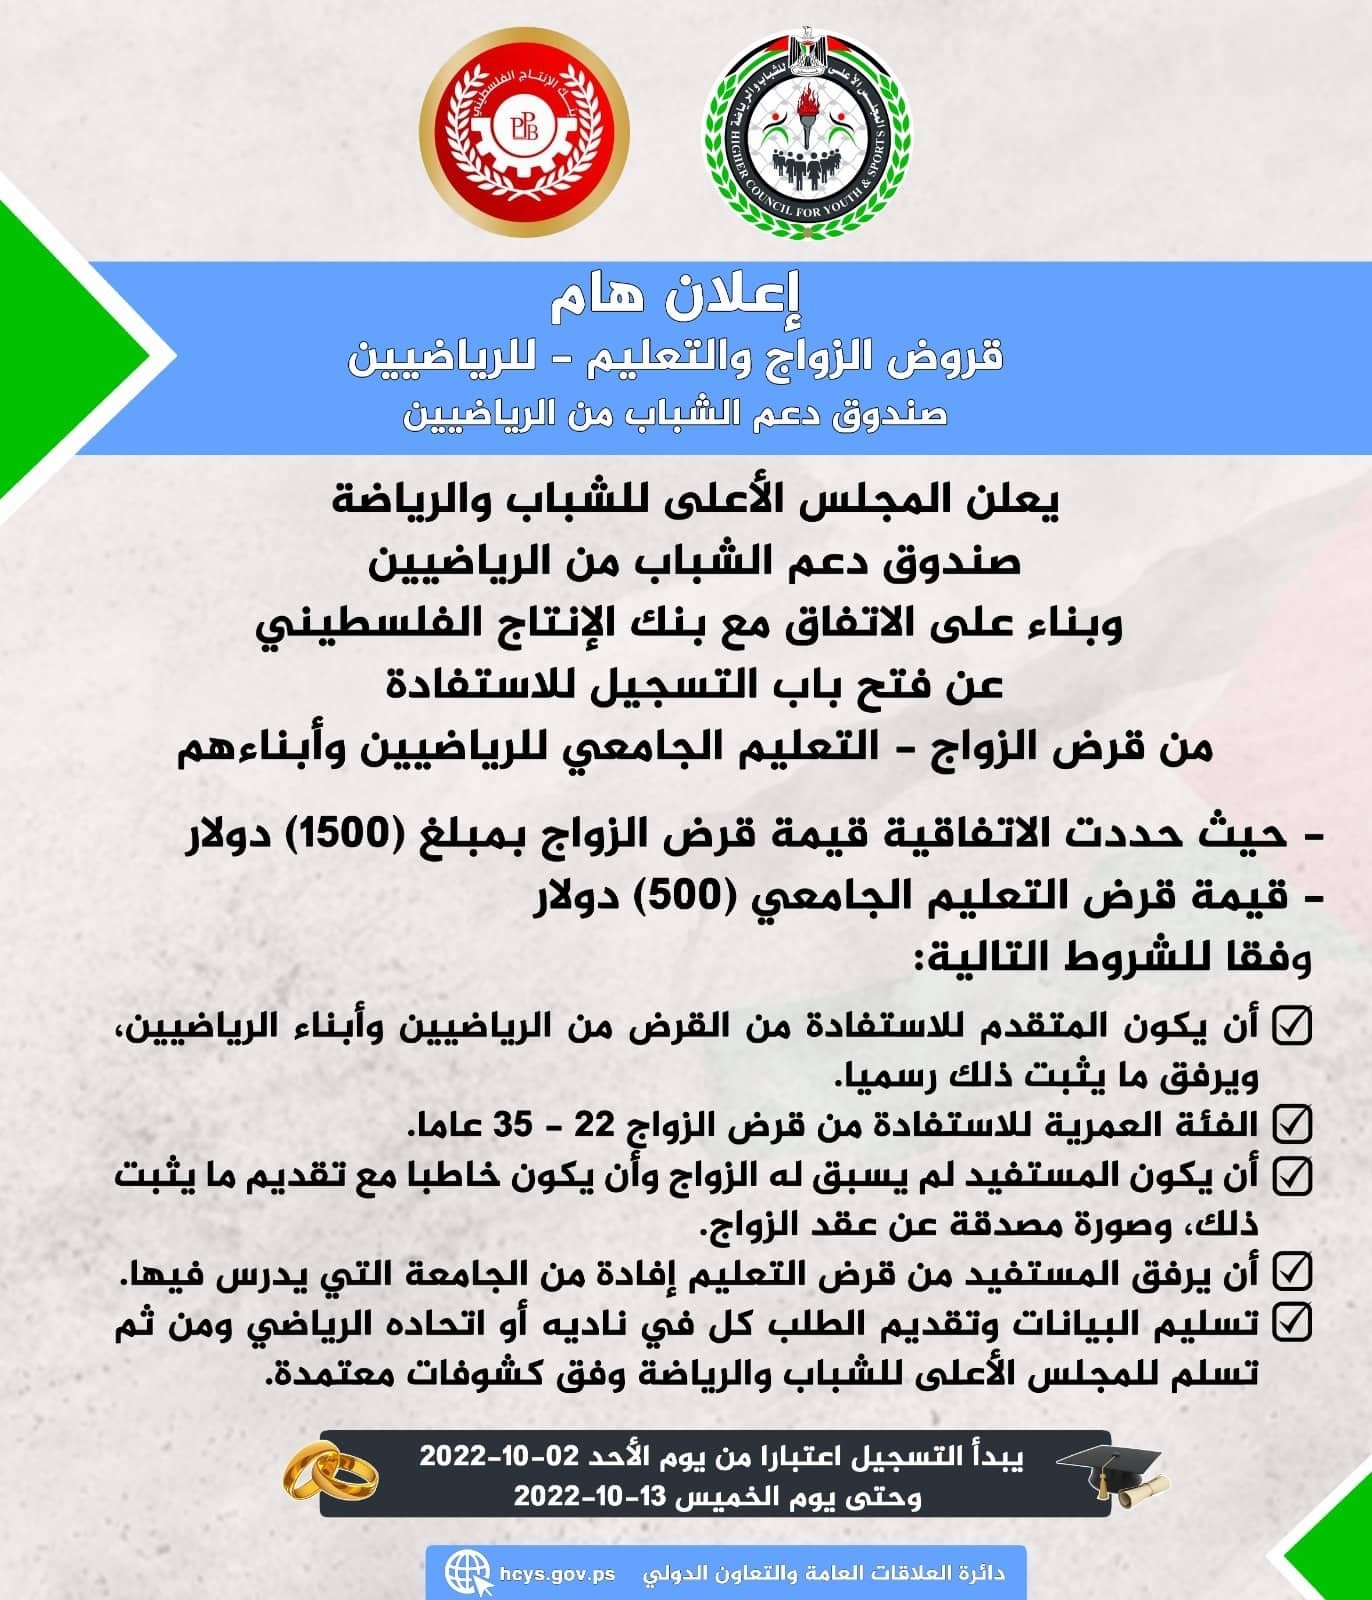 غزة: المجلس الأعلى للشباب يُعلن فتح باب التسجيل لقروض الرياضيين